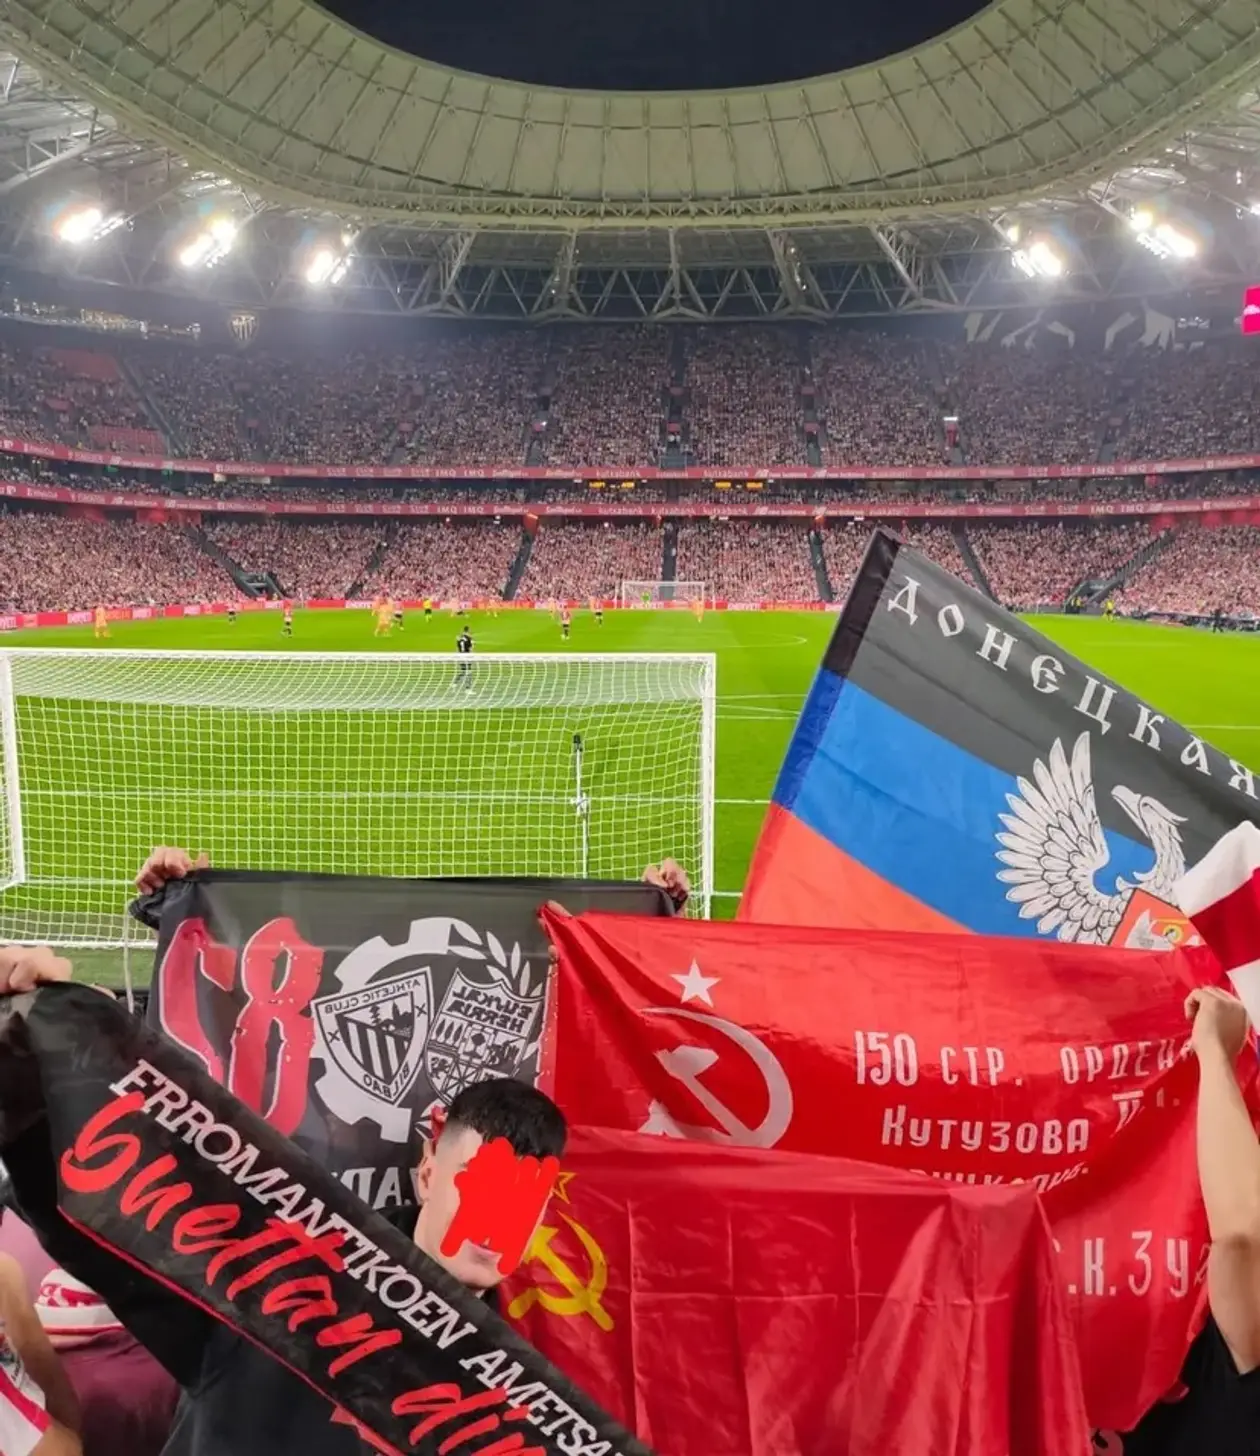 Фанати "Атлетик" Більбао продемонстрували на матчі проти мадридського "Атлетіко" прапори т.зв. "ДНР" та СРСР